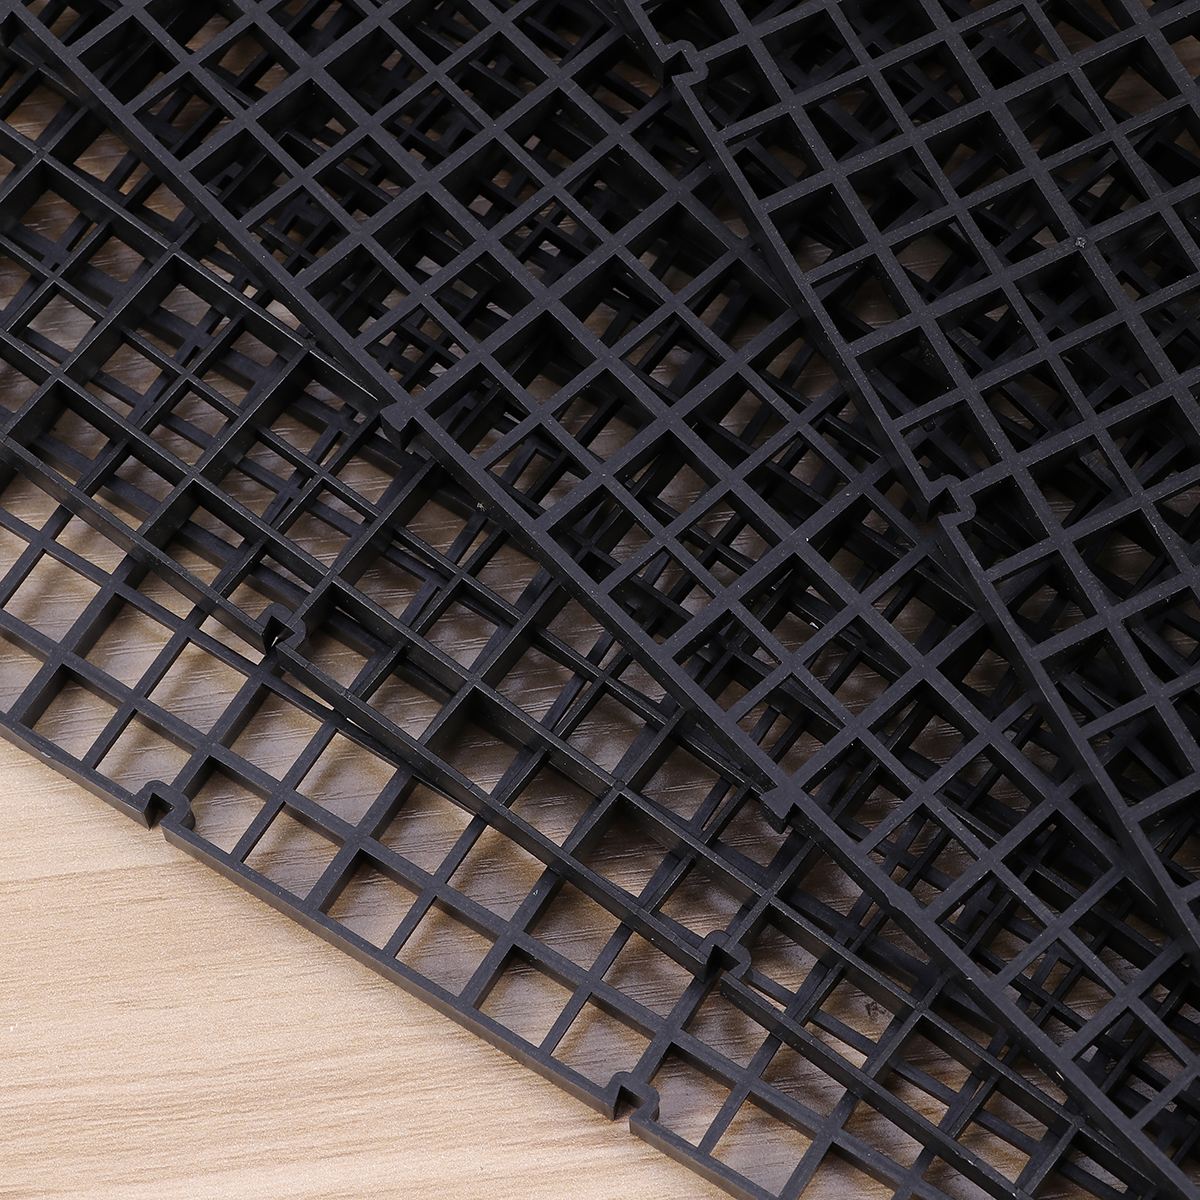 8 stk plastik akvarium isoleringsdeler filter gitterplade patition bord akvarium netdeler holder adskillelseskort (sort)